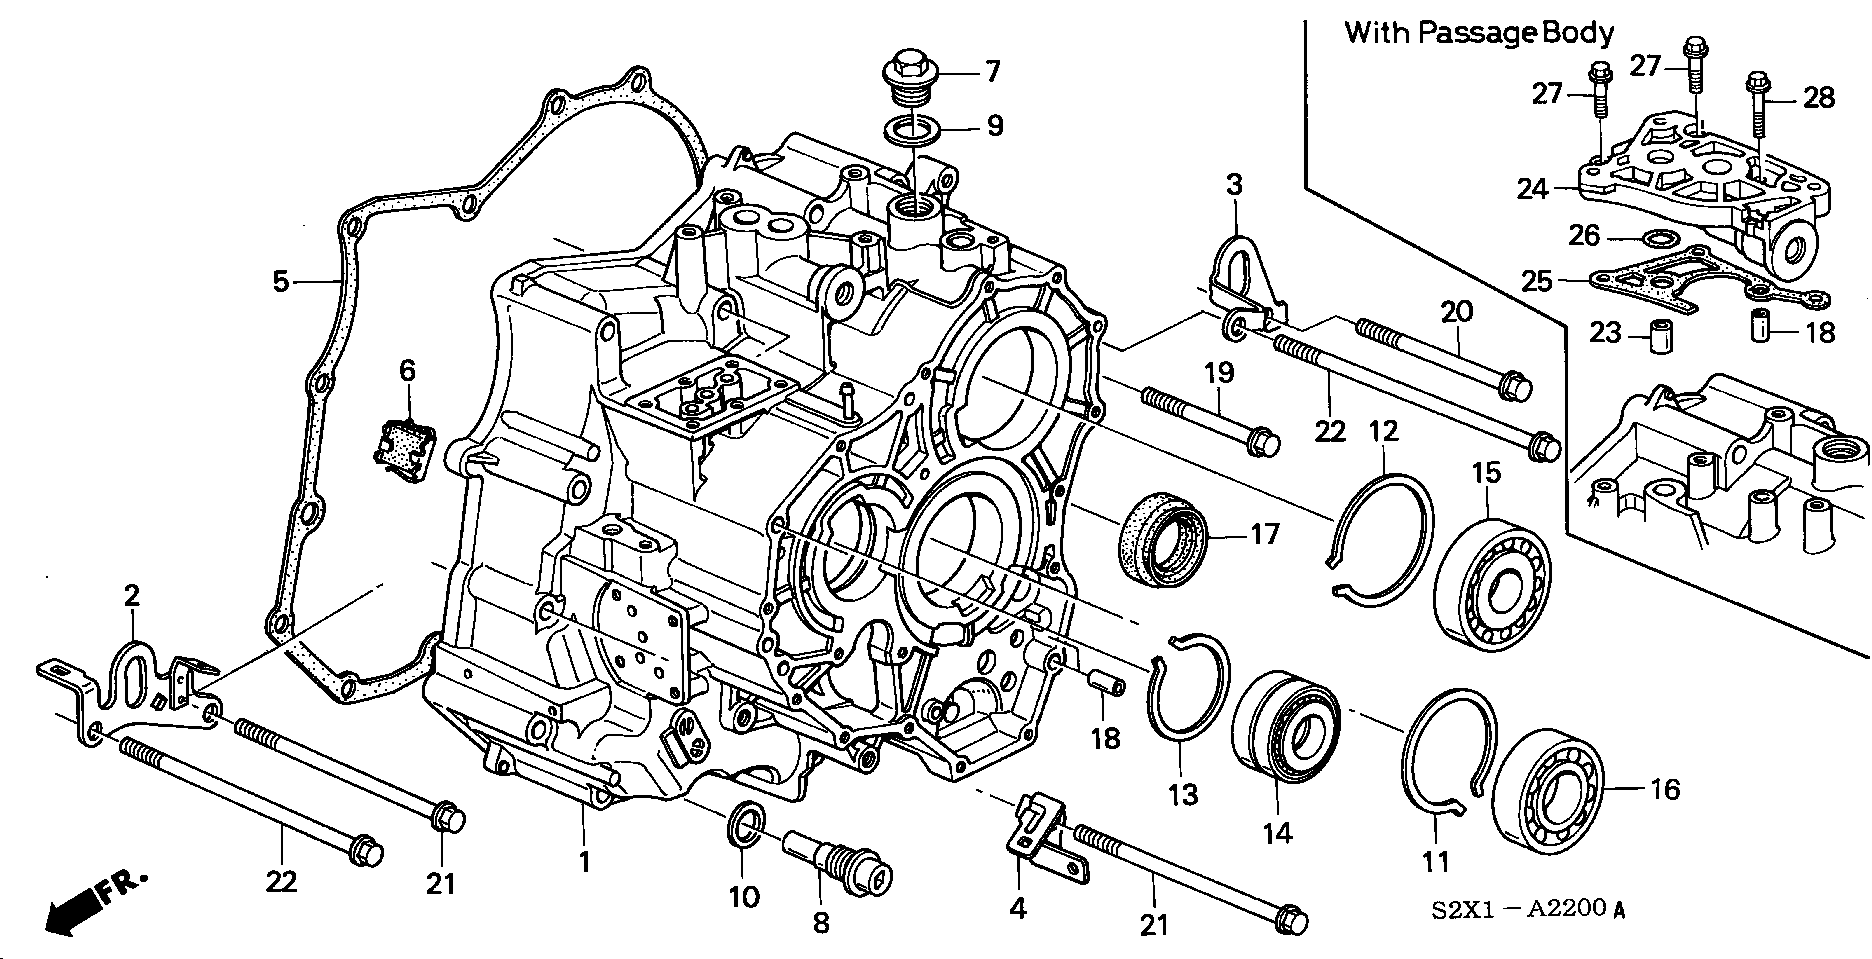 TRANSMISSION CASE(V6) (2WD)